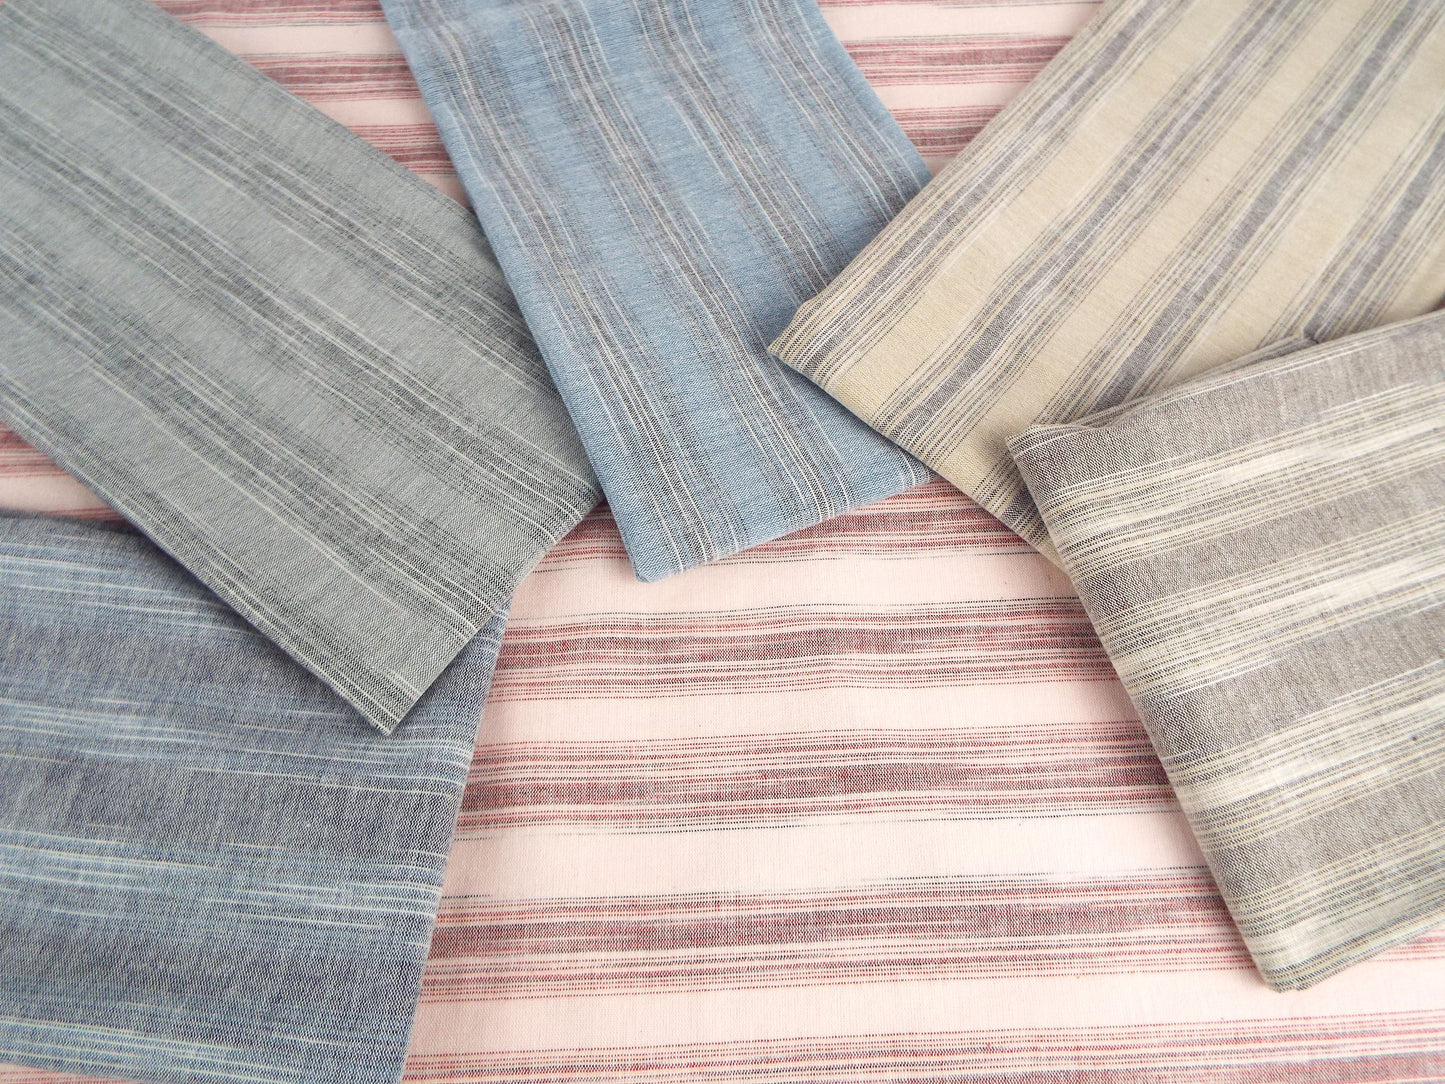 亀田縞　綿織物　薄地　#102　ABCDEFの6パターン